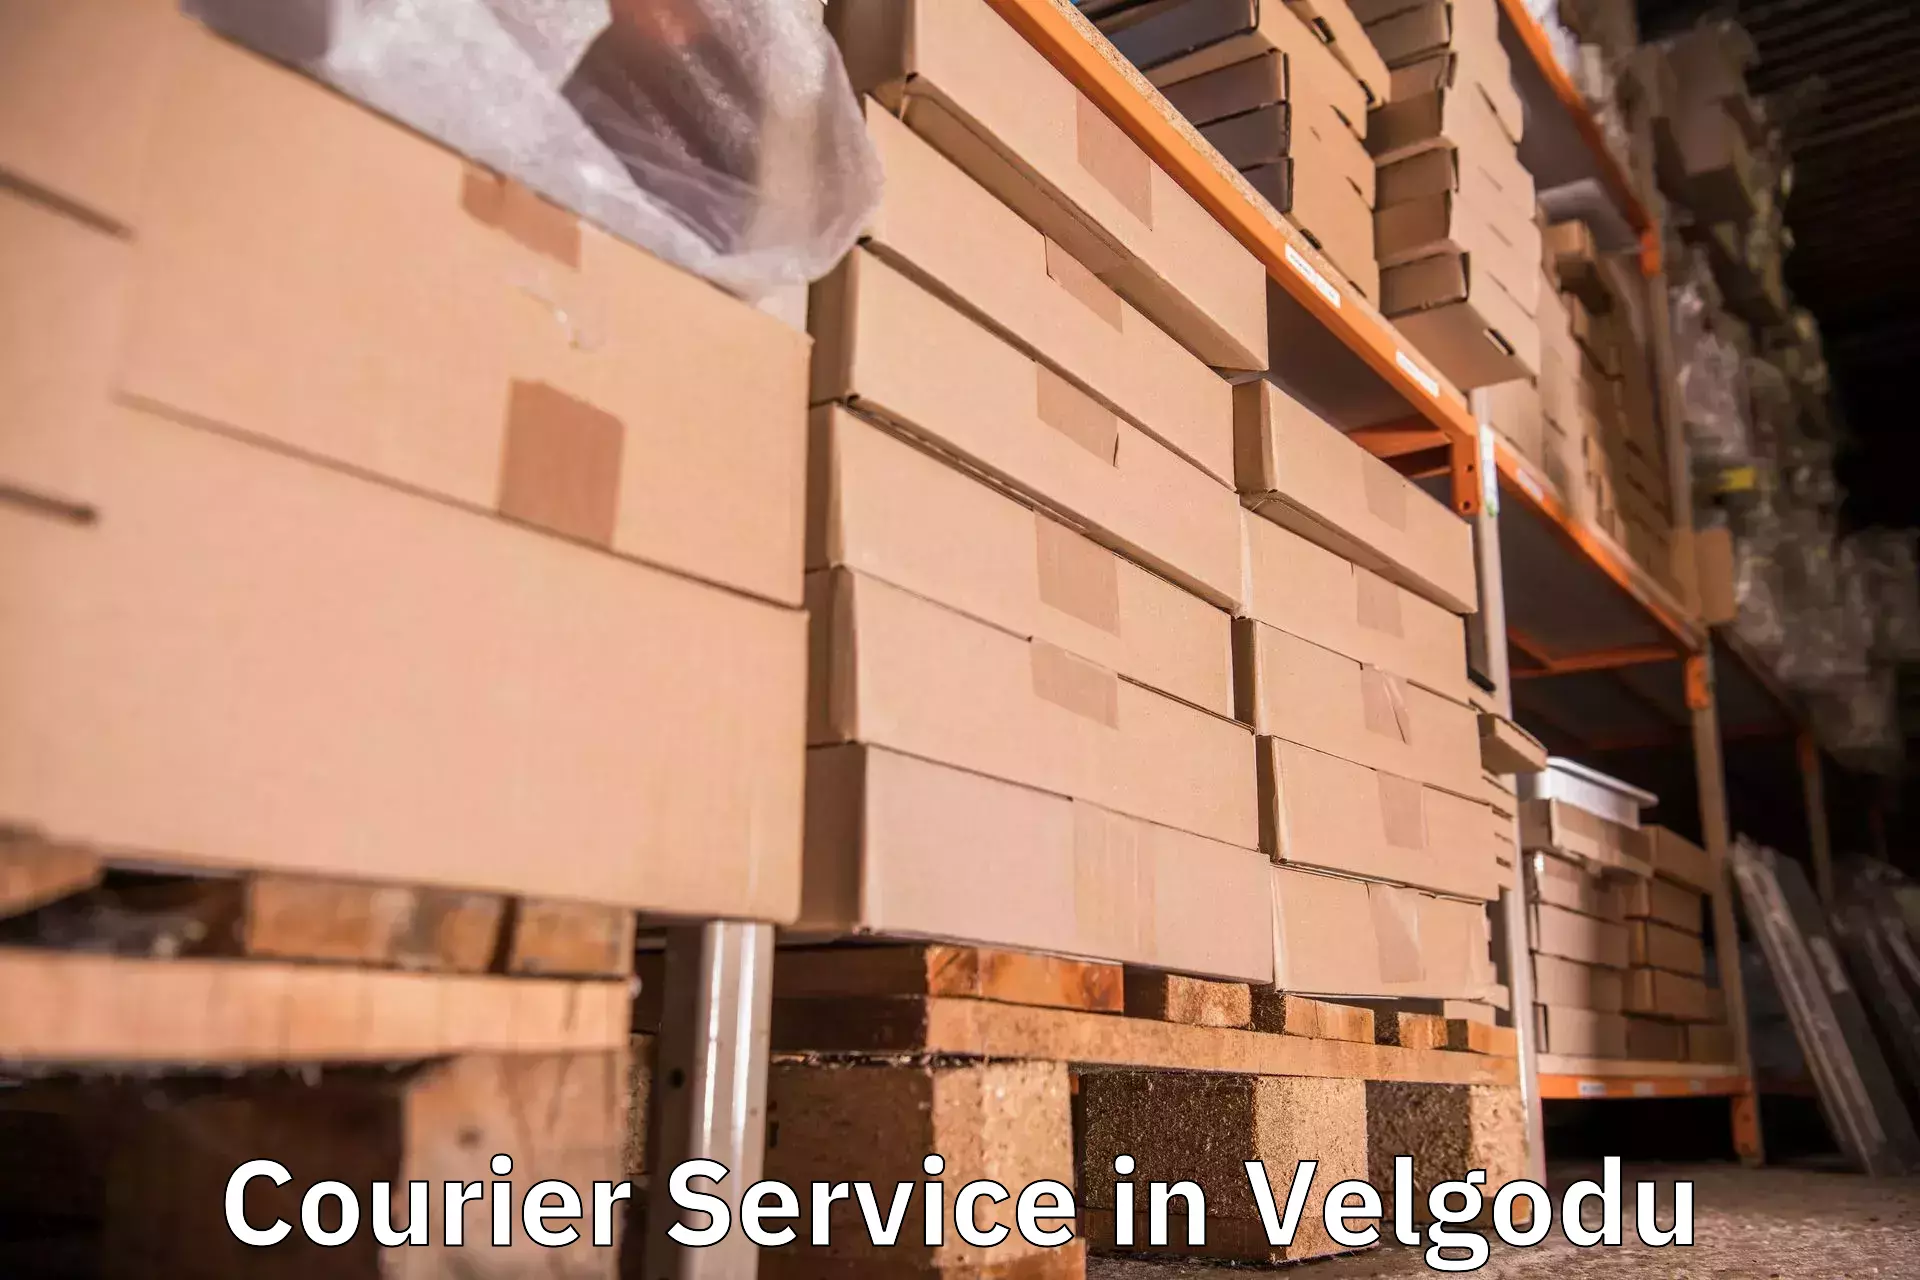 Specialized shipment handling in Velgodu